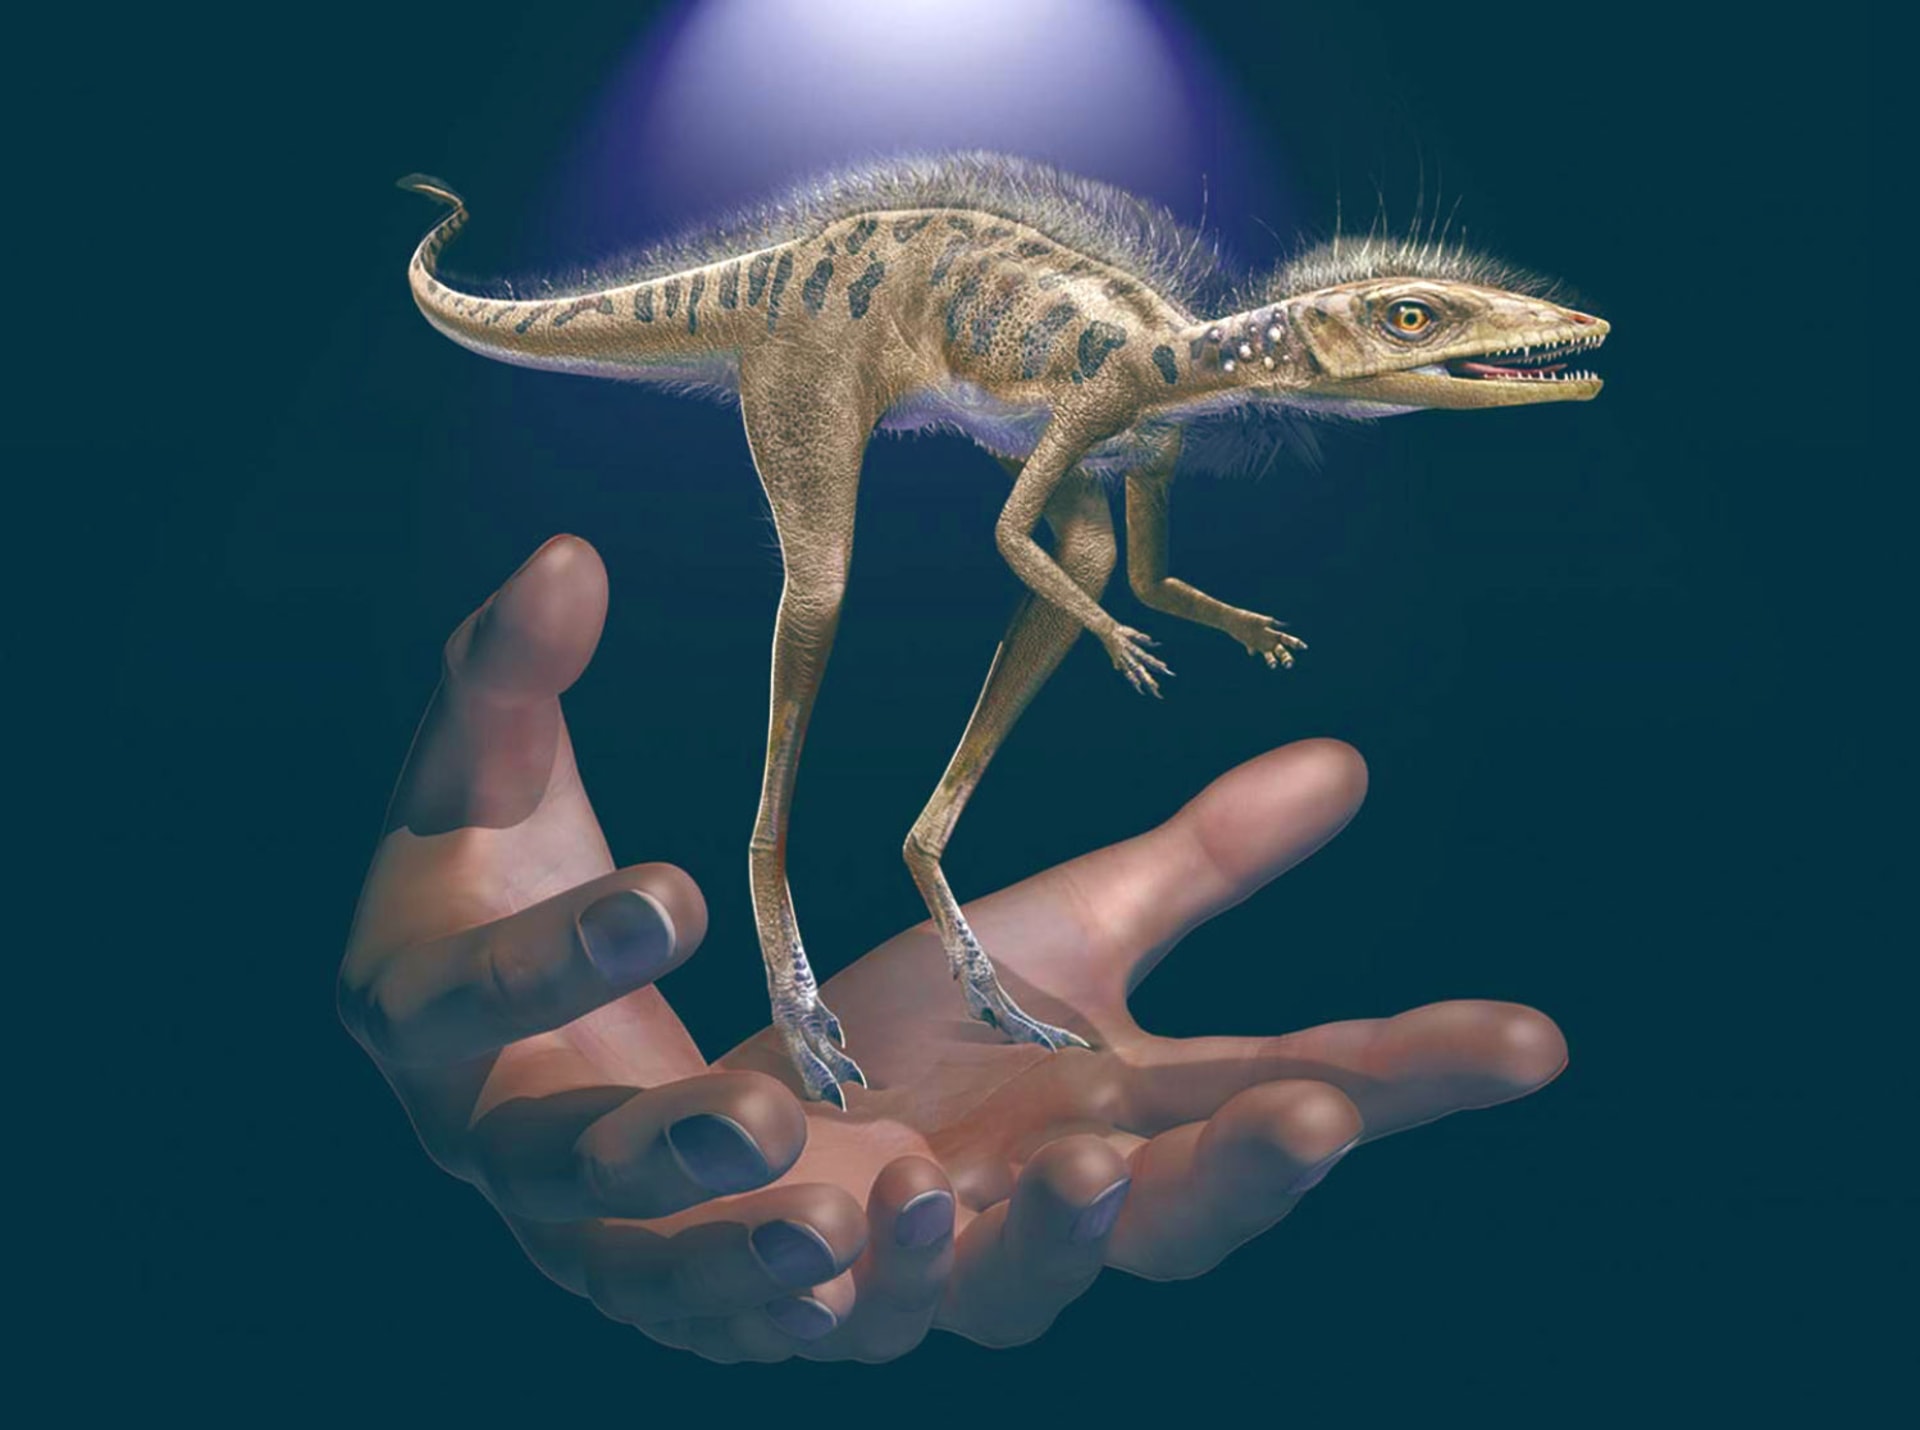 Malý hmyzožravý plaz Kongonaphon, který žil před 237 miliony let, byl podle vědců zkoumající fosílie na Madagaskaru miniaturním předkem obřích dinosaurů. Kongonaphon kely měřil asi 40 centimetrů. Zdroj: Sci News